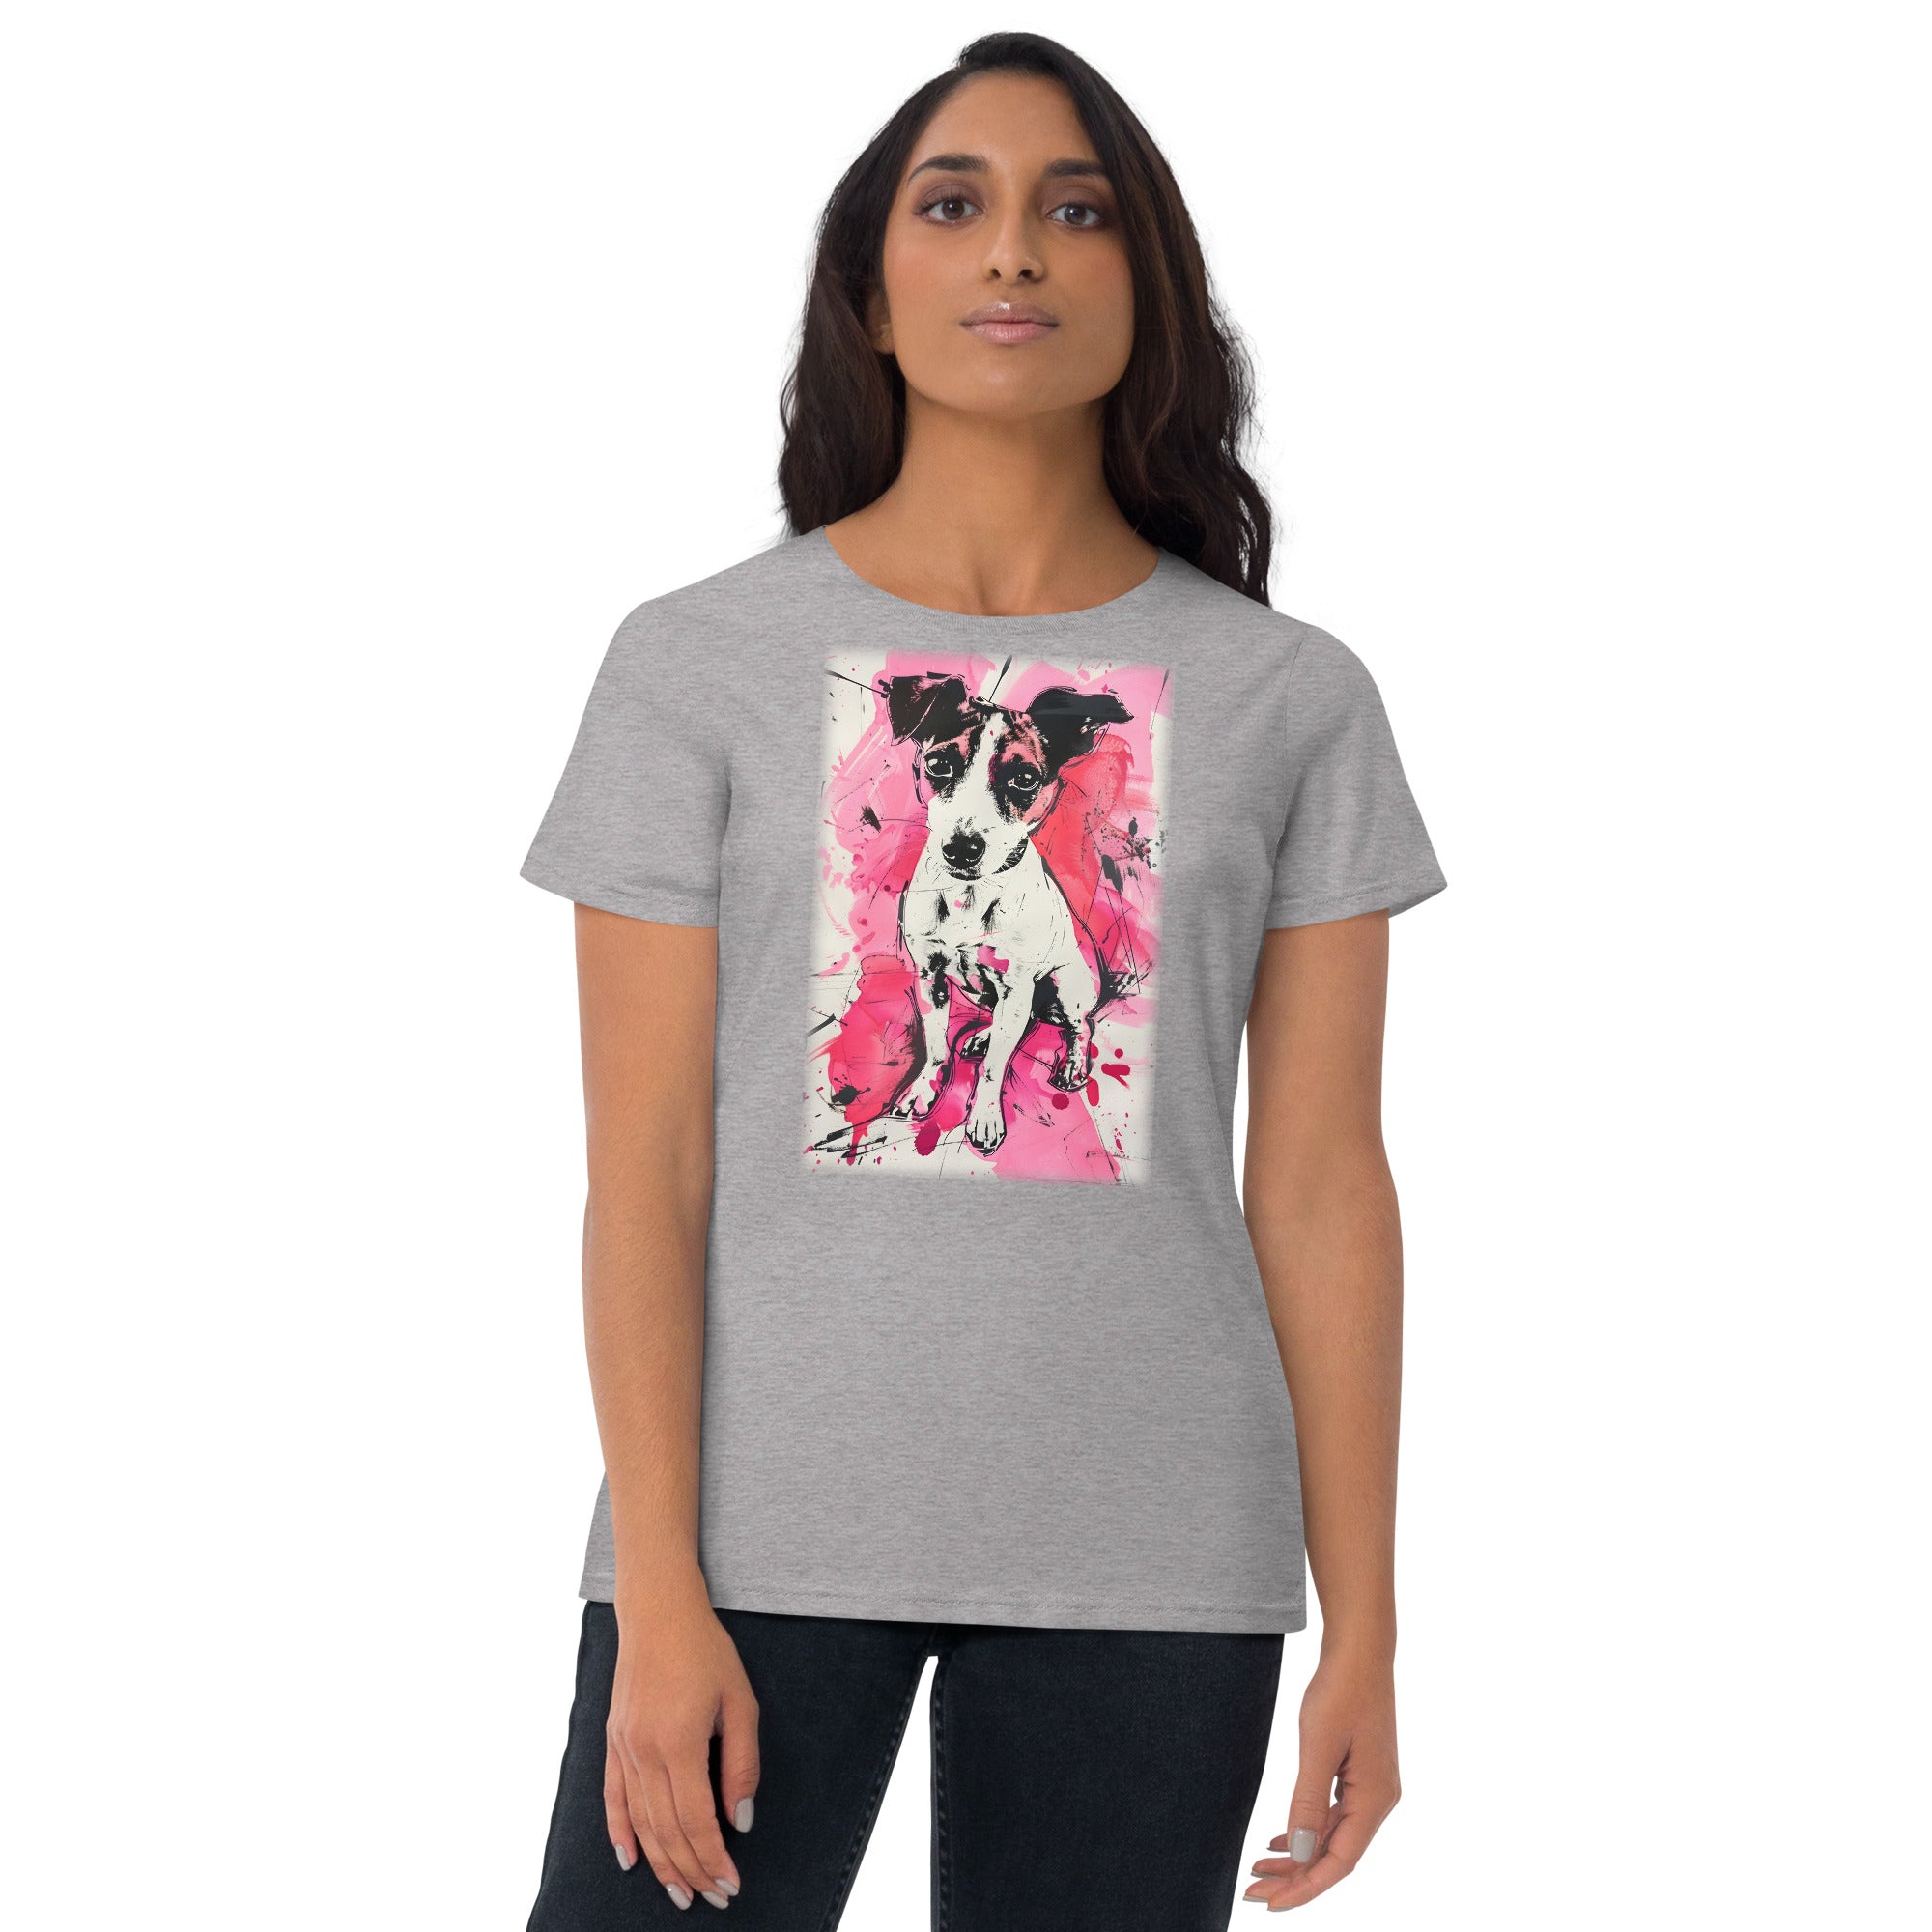 Jack Russells Women's short sleeve t-shirt